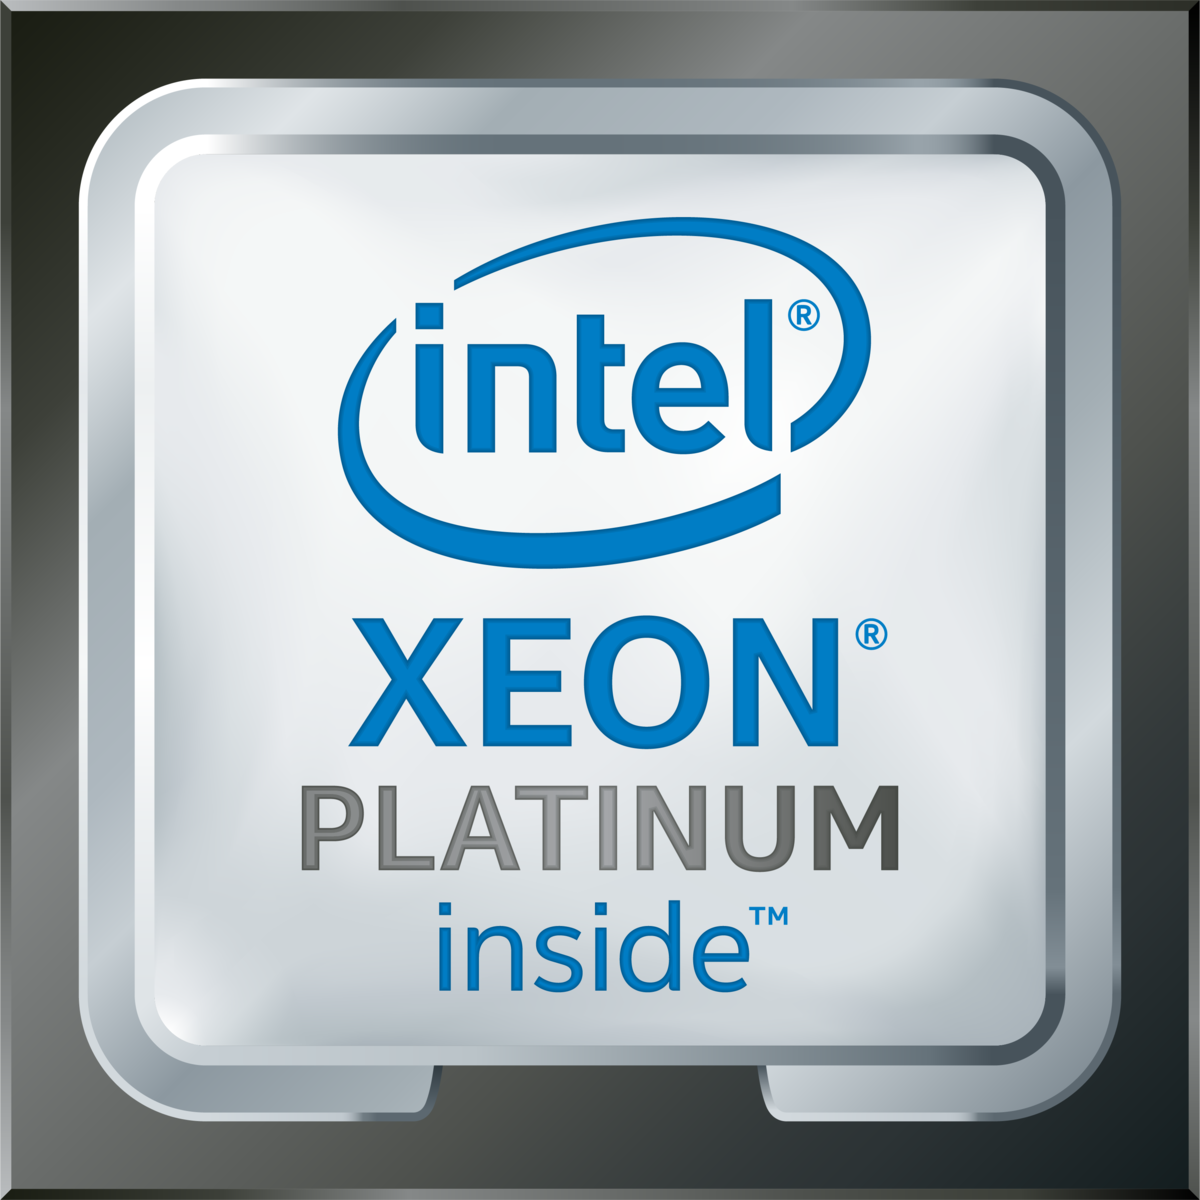 Intel(R) Xeon(R) Platinum 8369B CPU @ 2.70GHz's logo